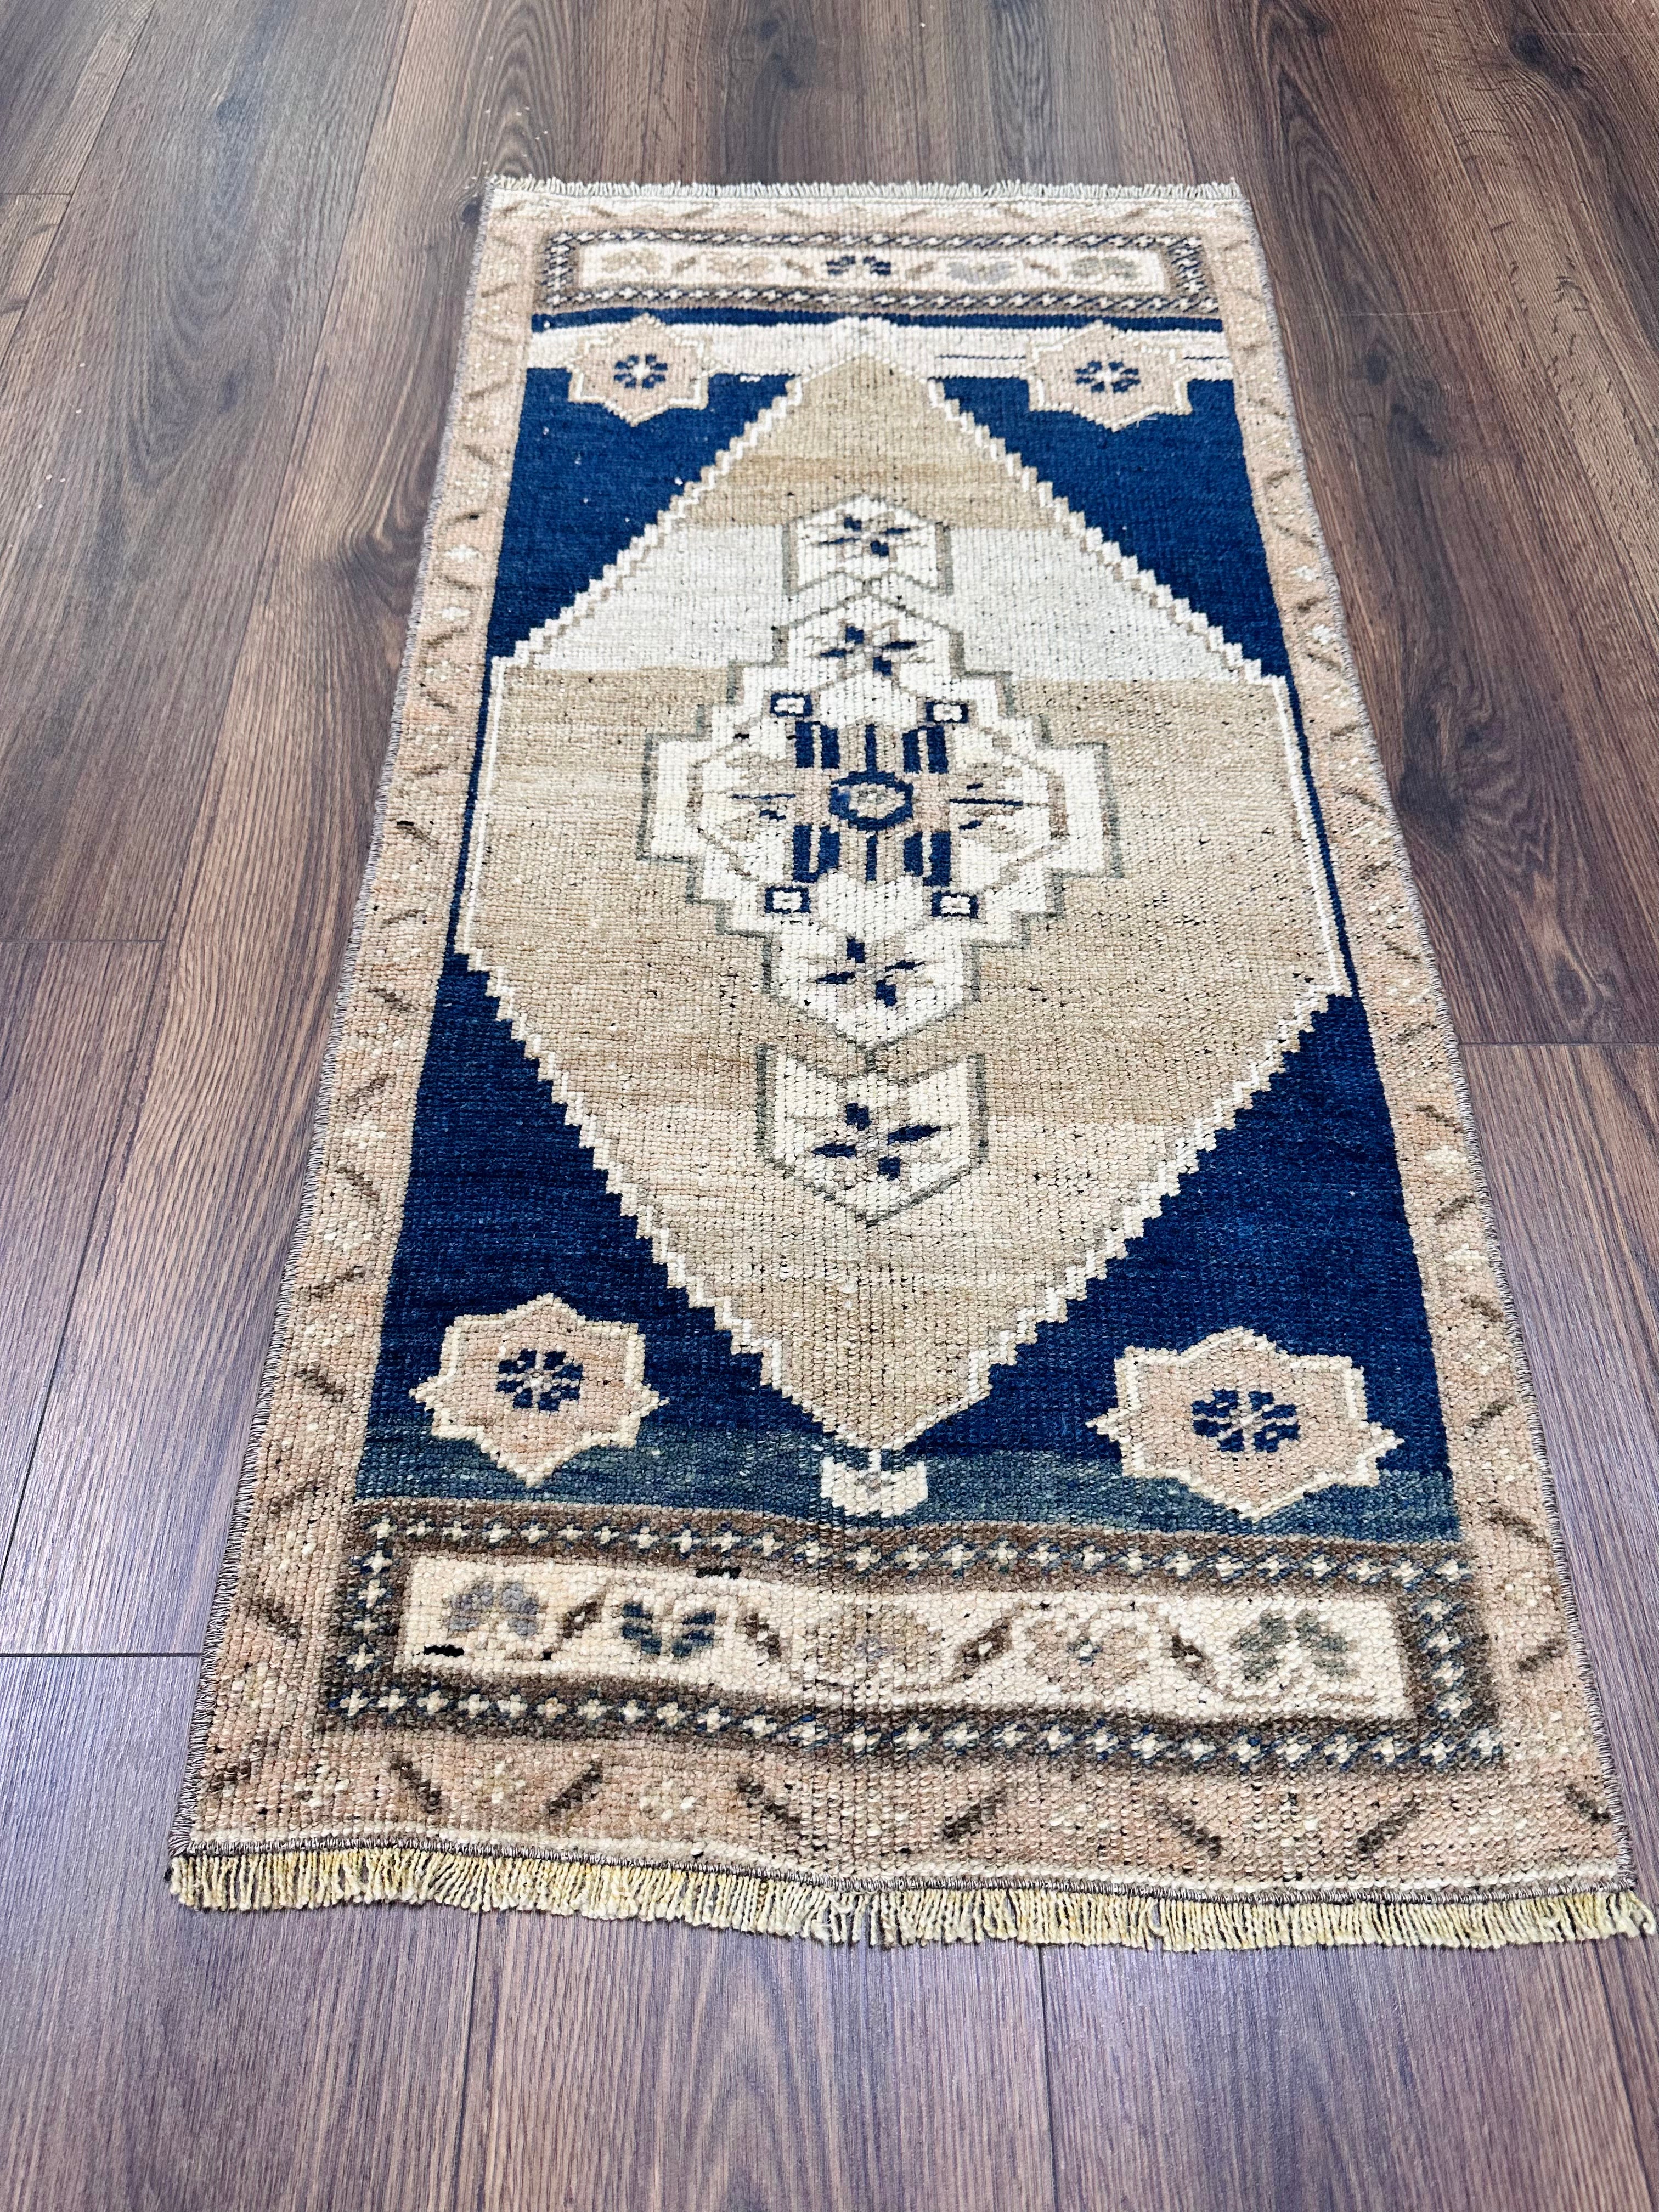 19x35 hand knotted, wool on wool, vintage Turkish mini rug